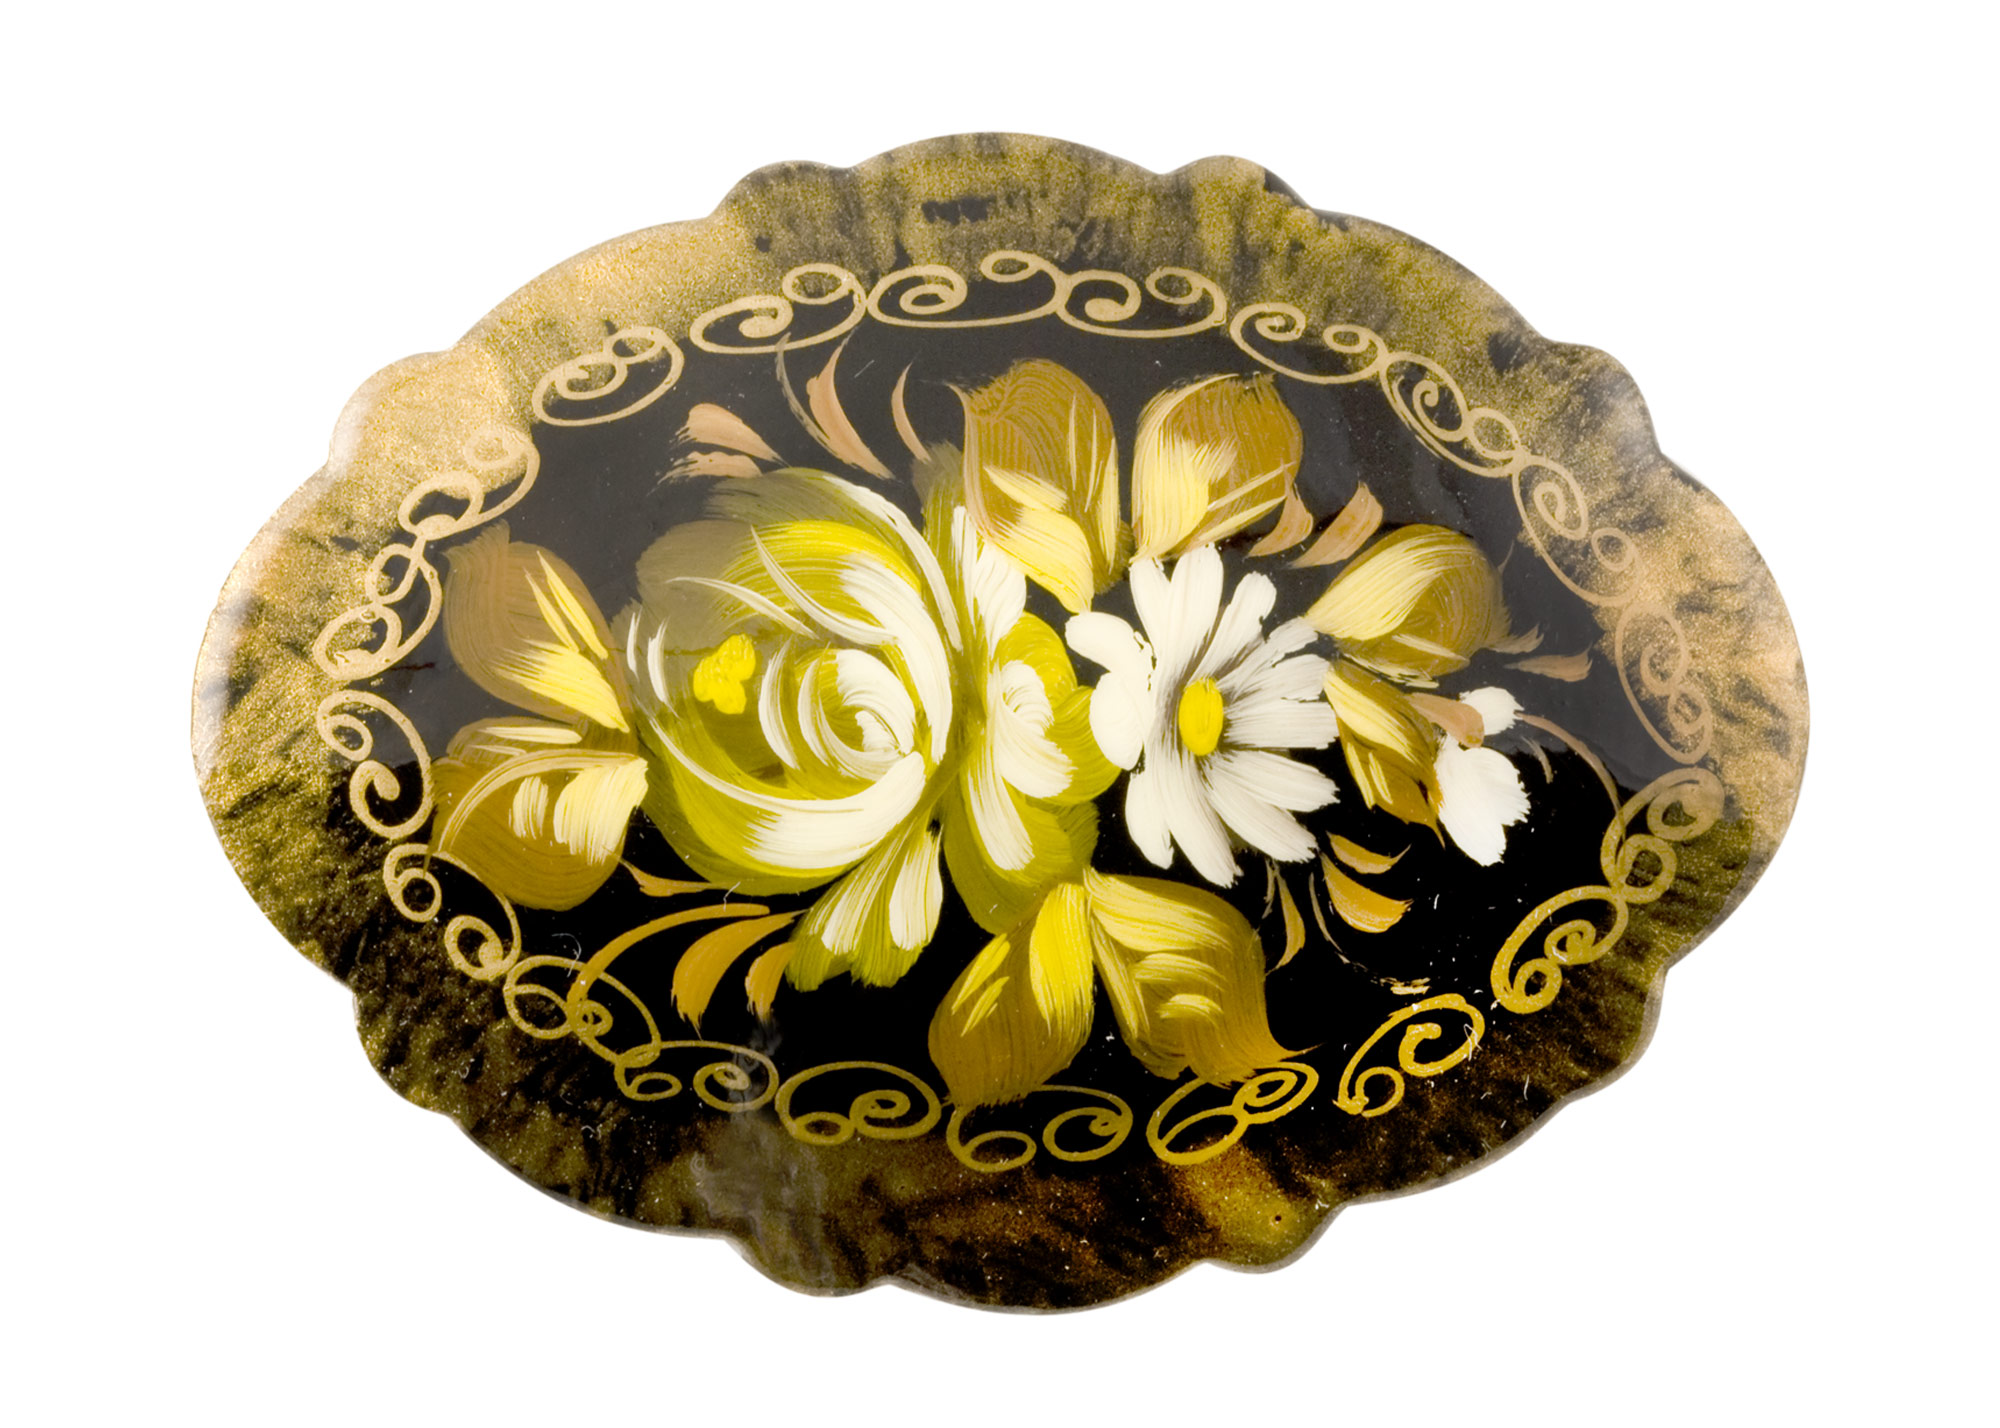 Buy Simple Floral Brooch at GoldenCockerel.com